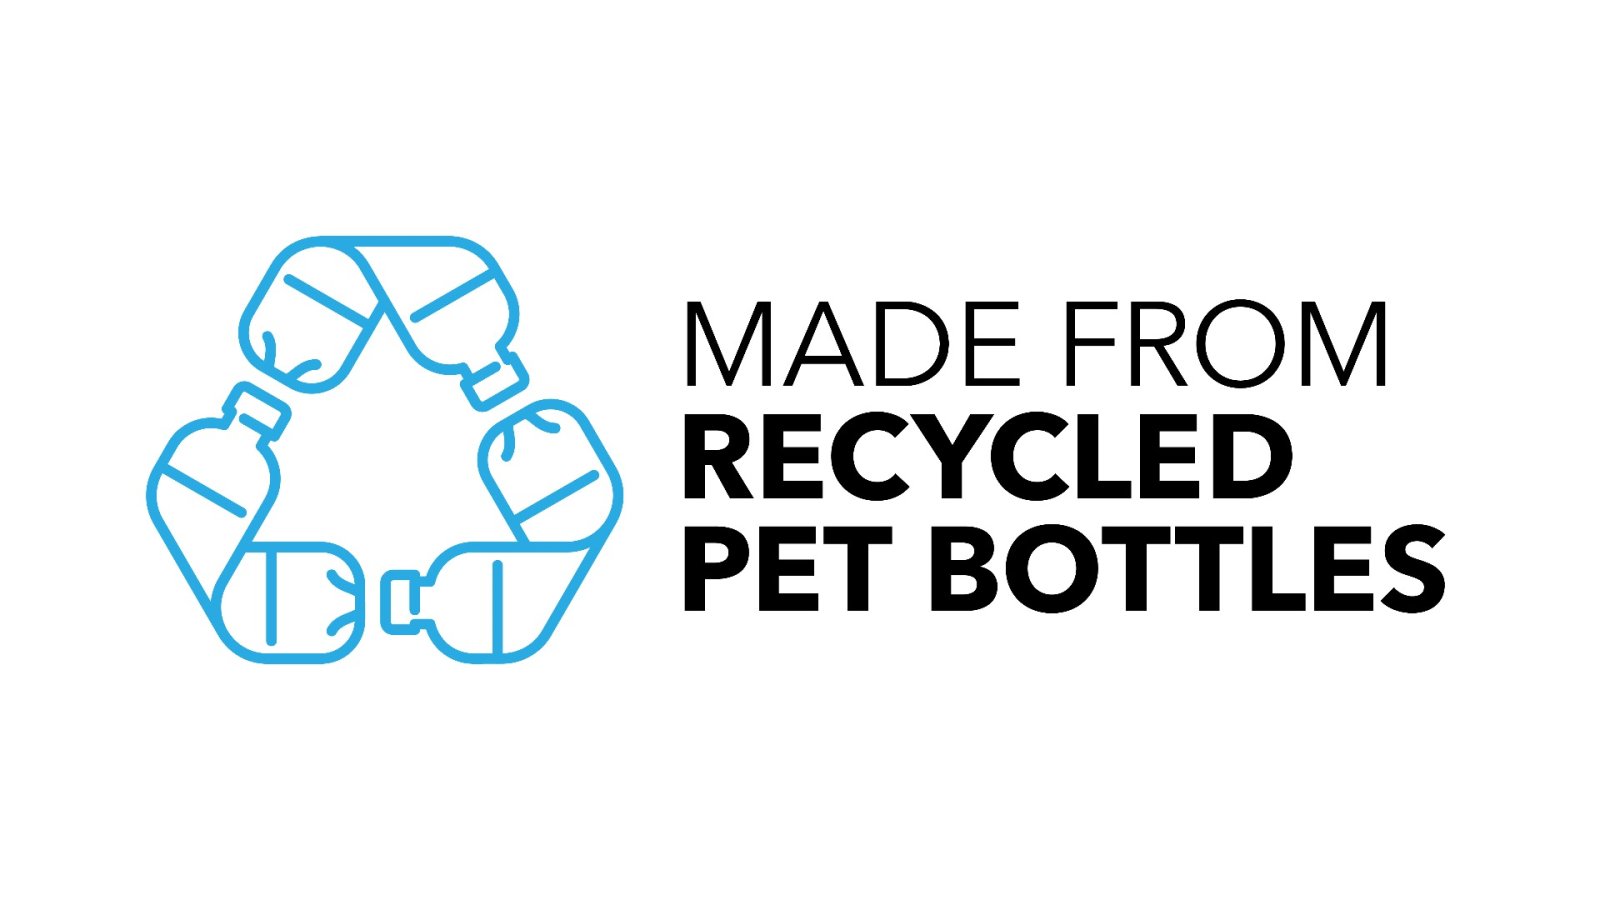 Comment se lancer dans des accessoires upcyclés et recyclés pour sauver la planète